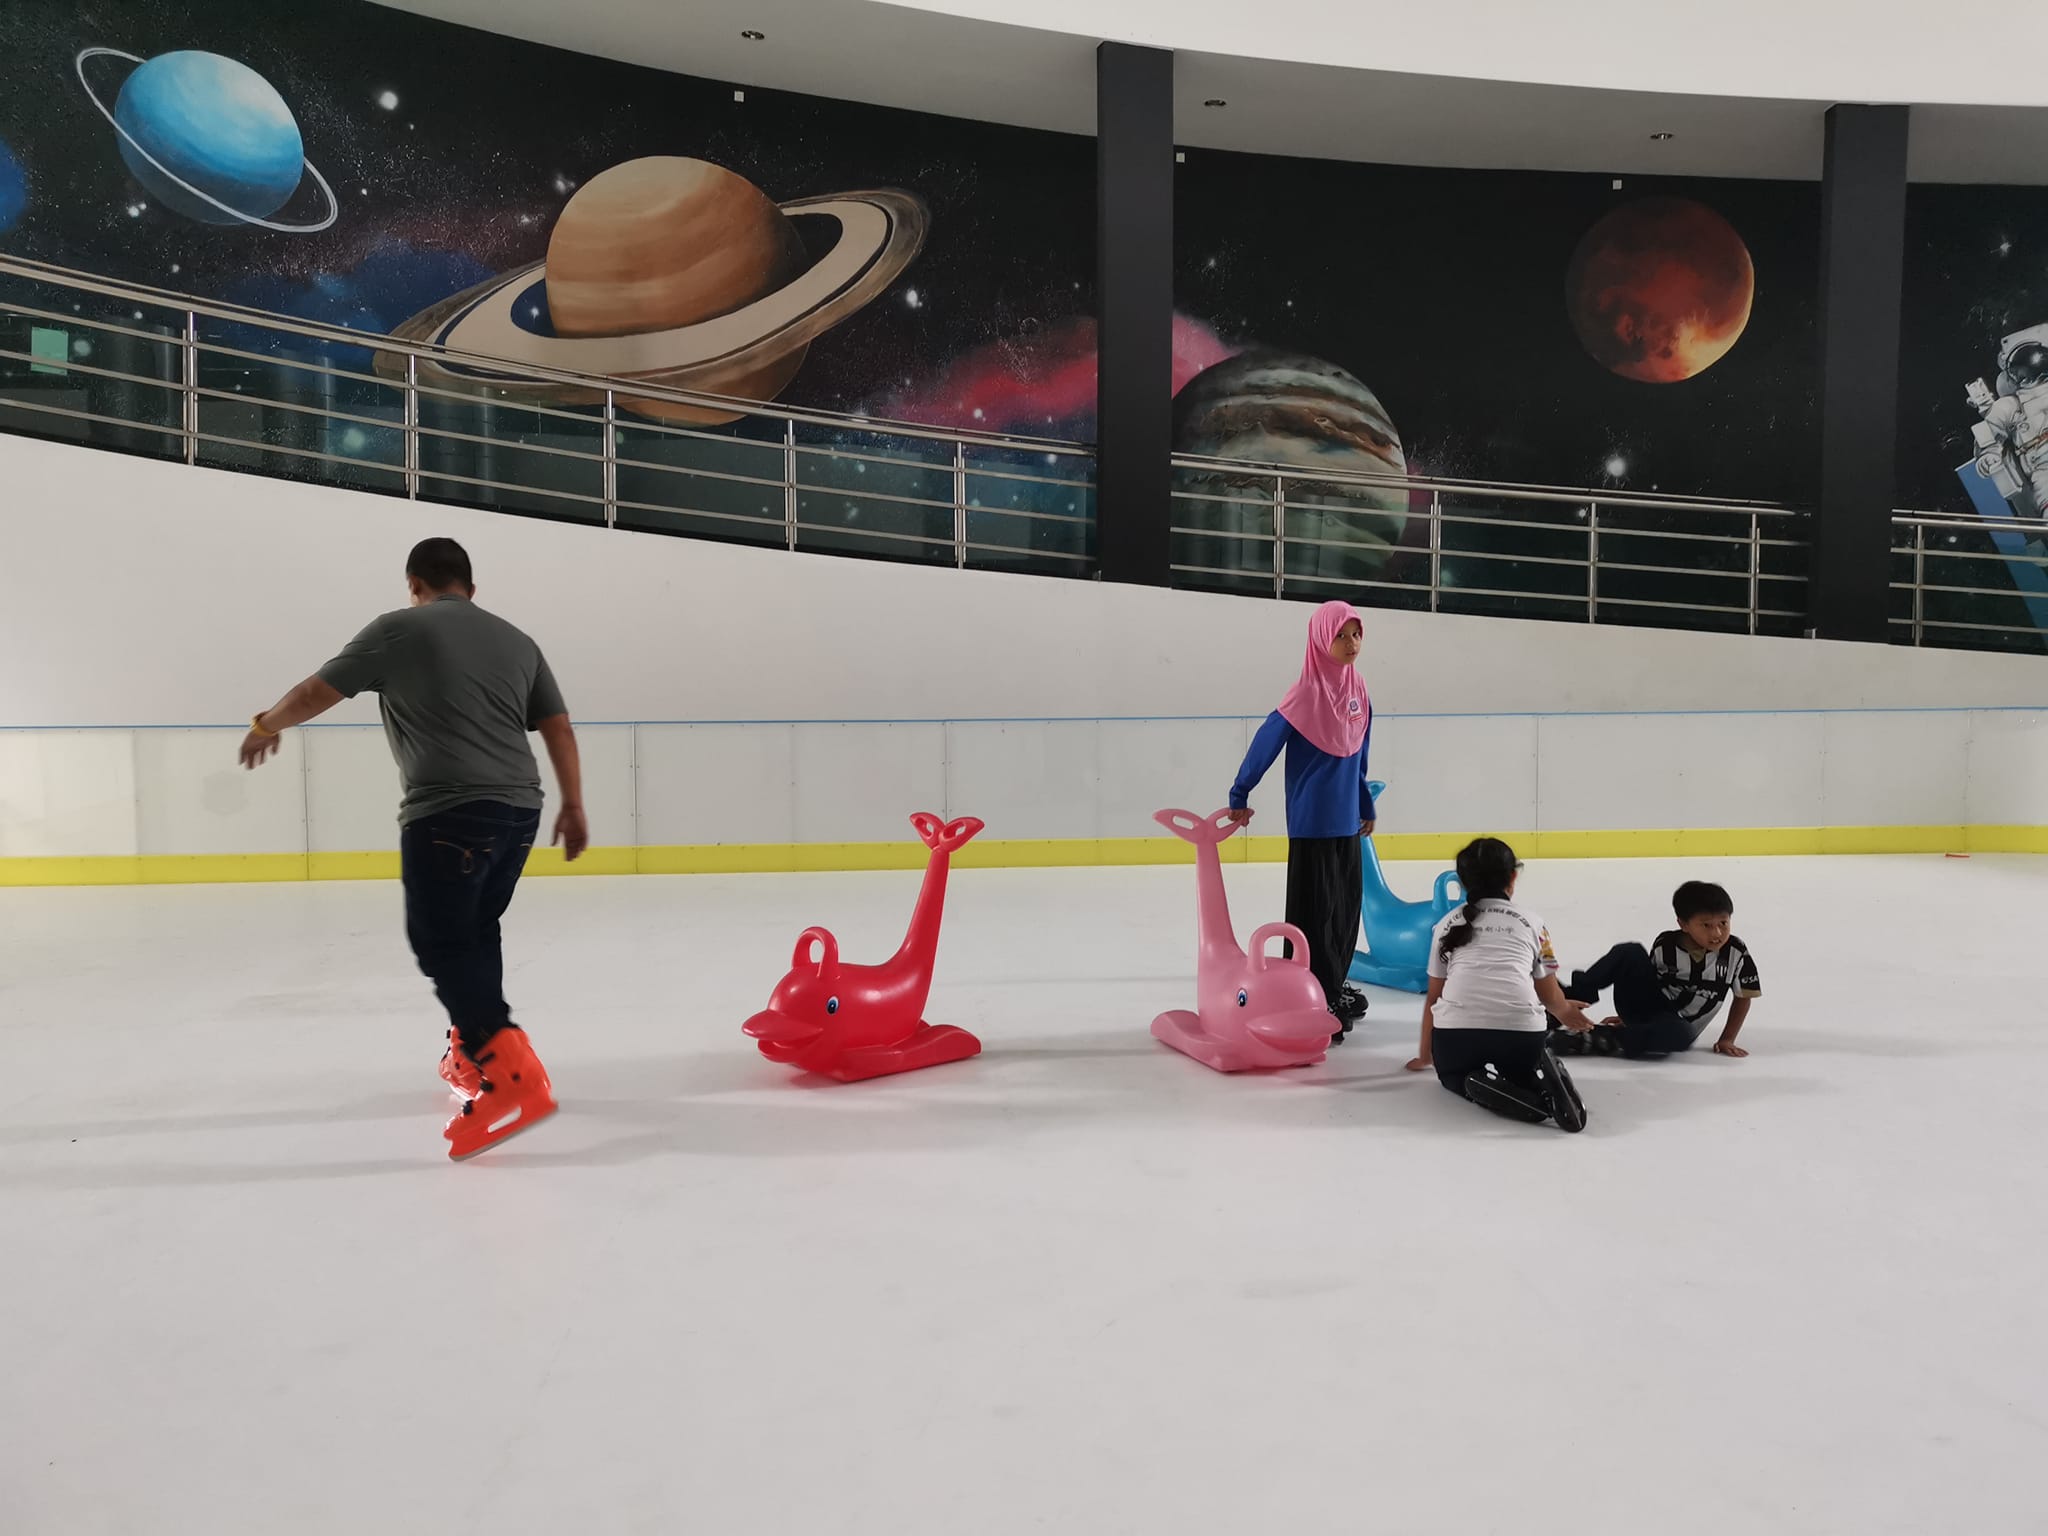 登科学及创意中心 开放仿真冰滑冰场